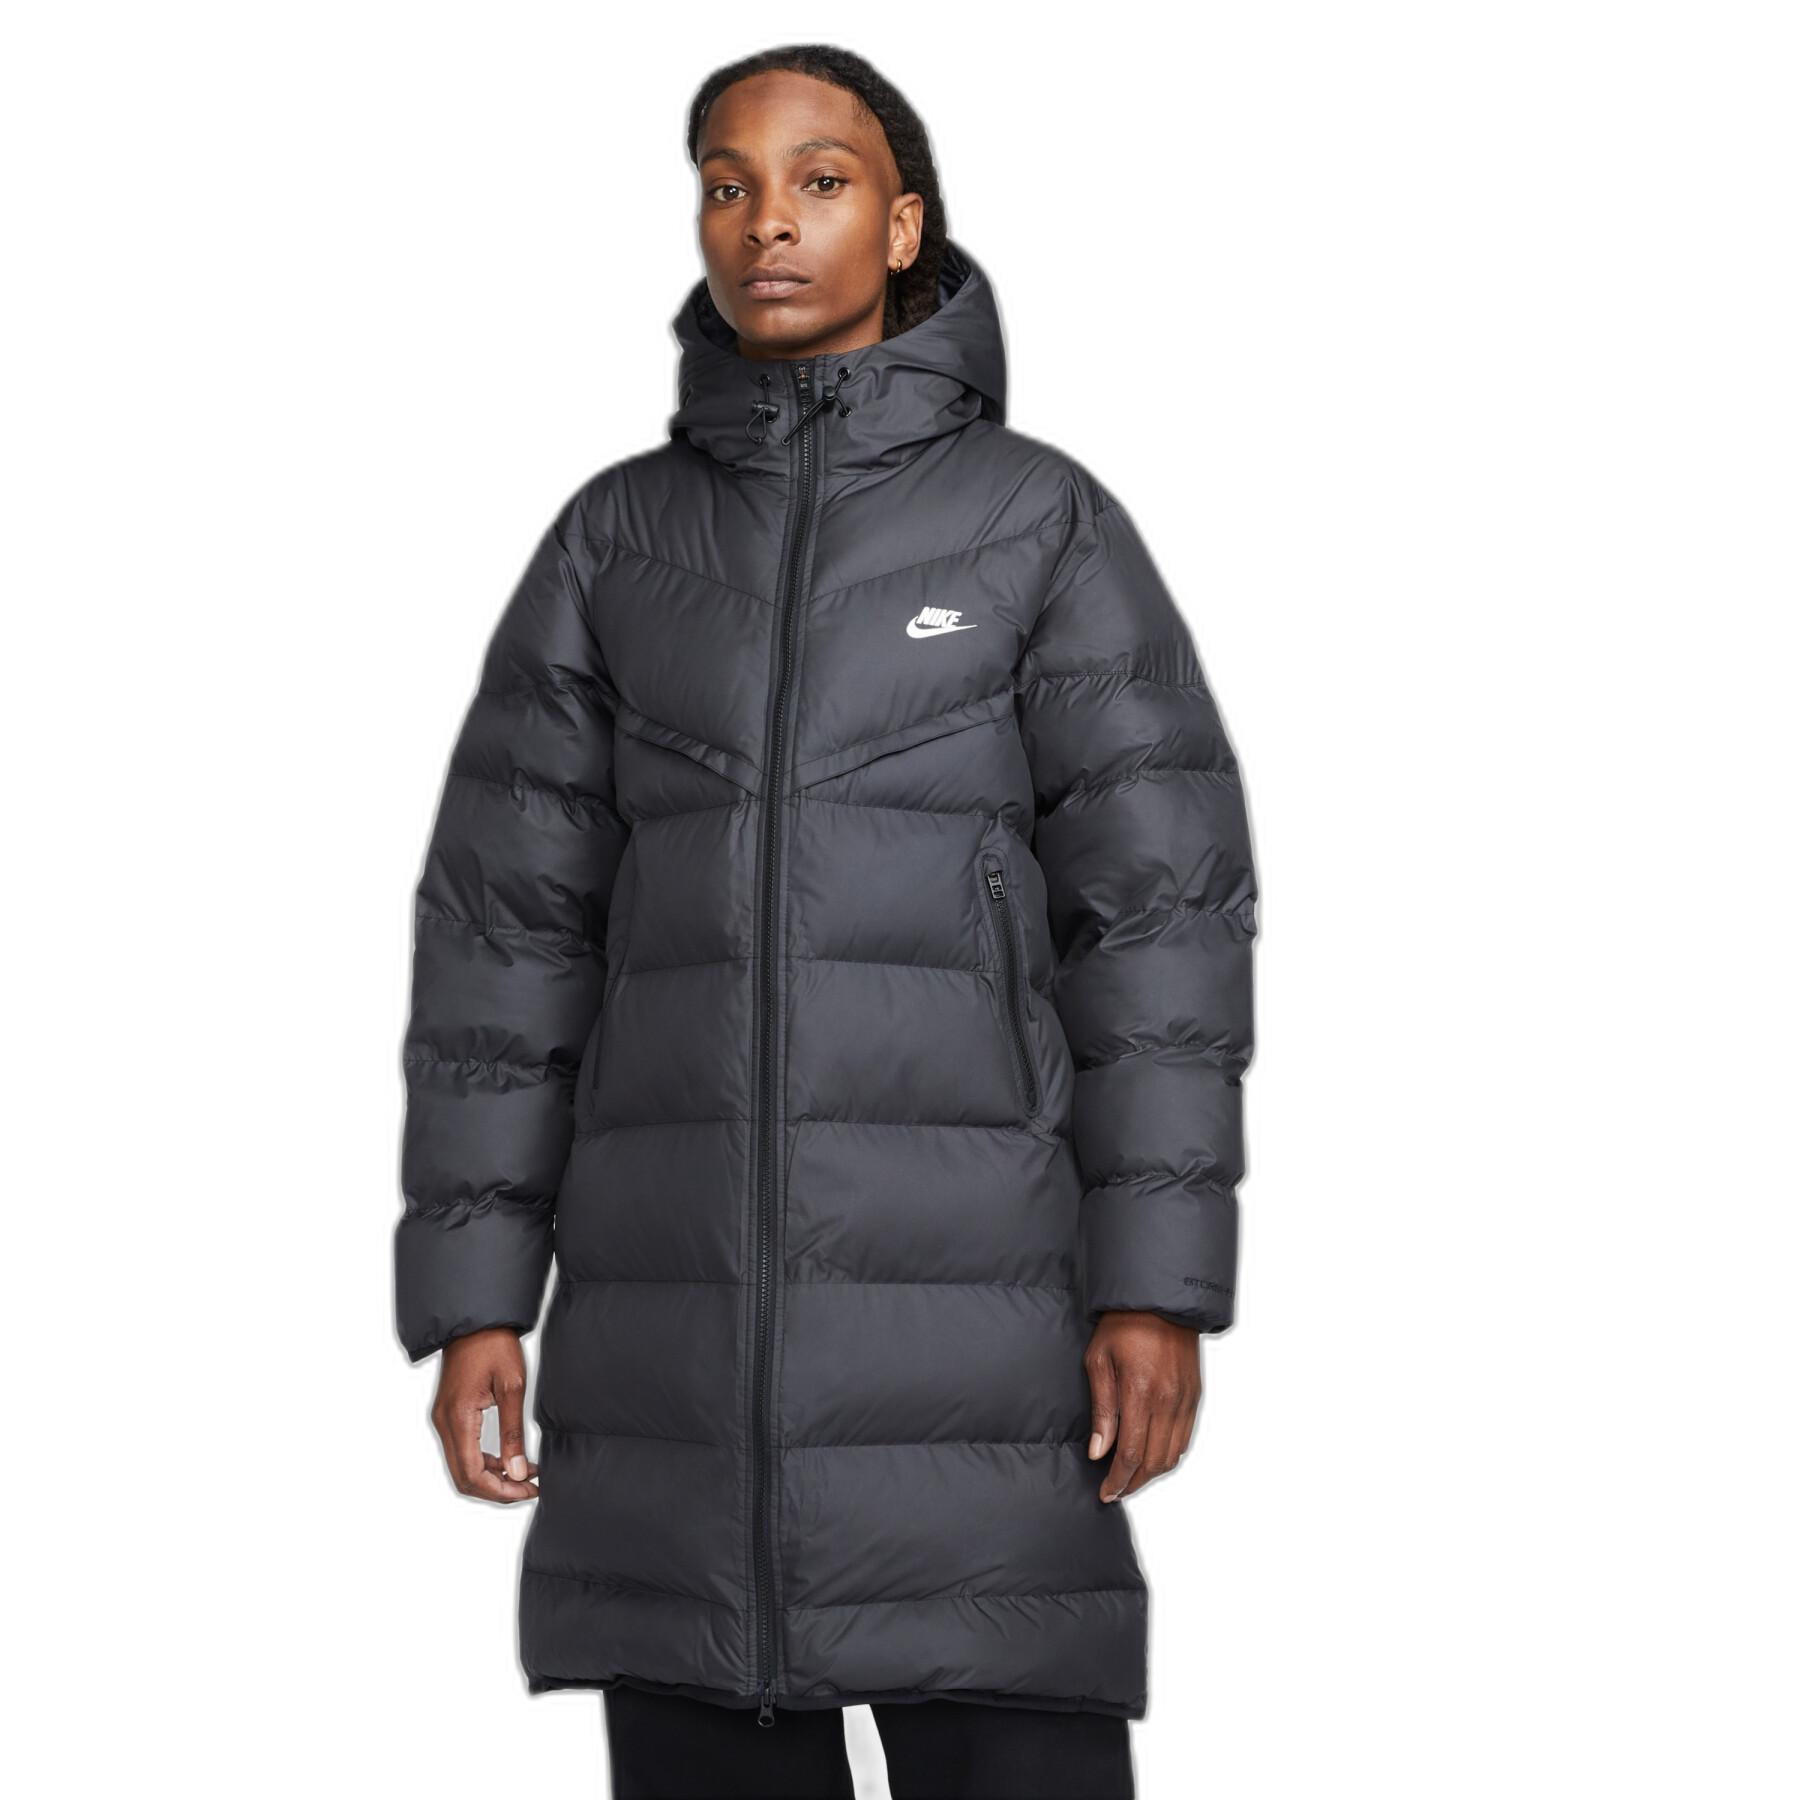 Nike, Jackets & Coats, Nike Kobe Bryant Winter Jacket